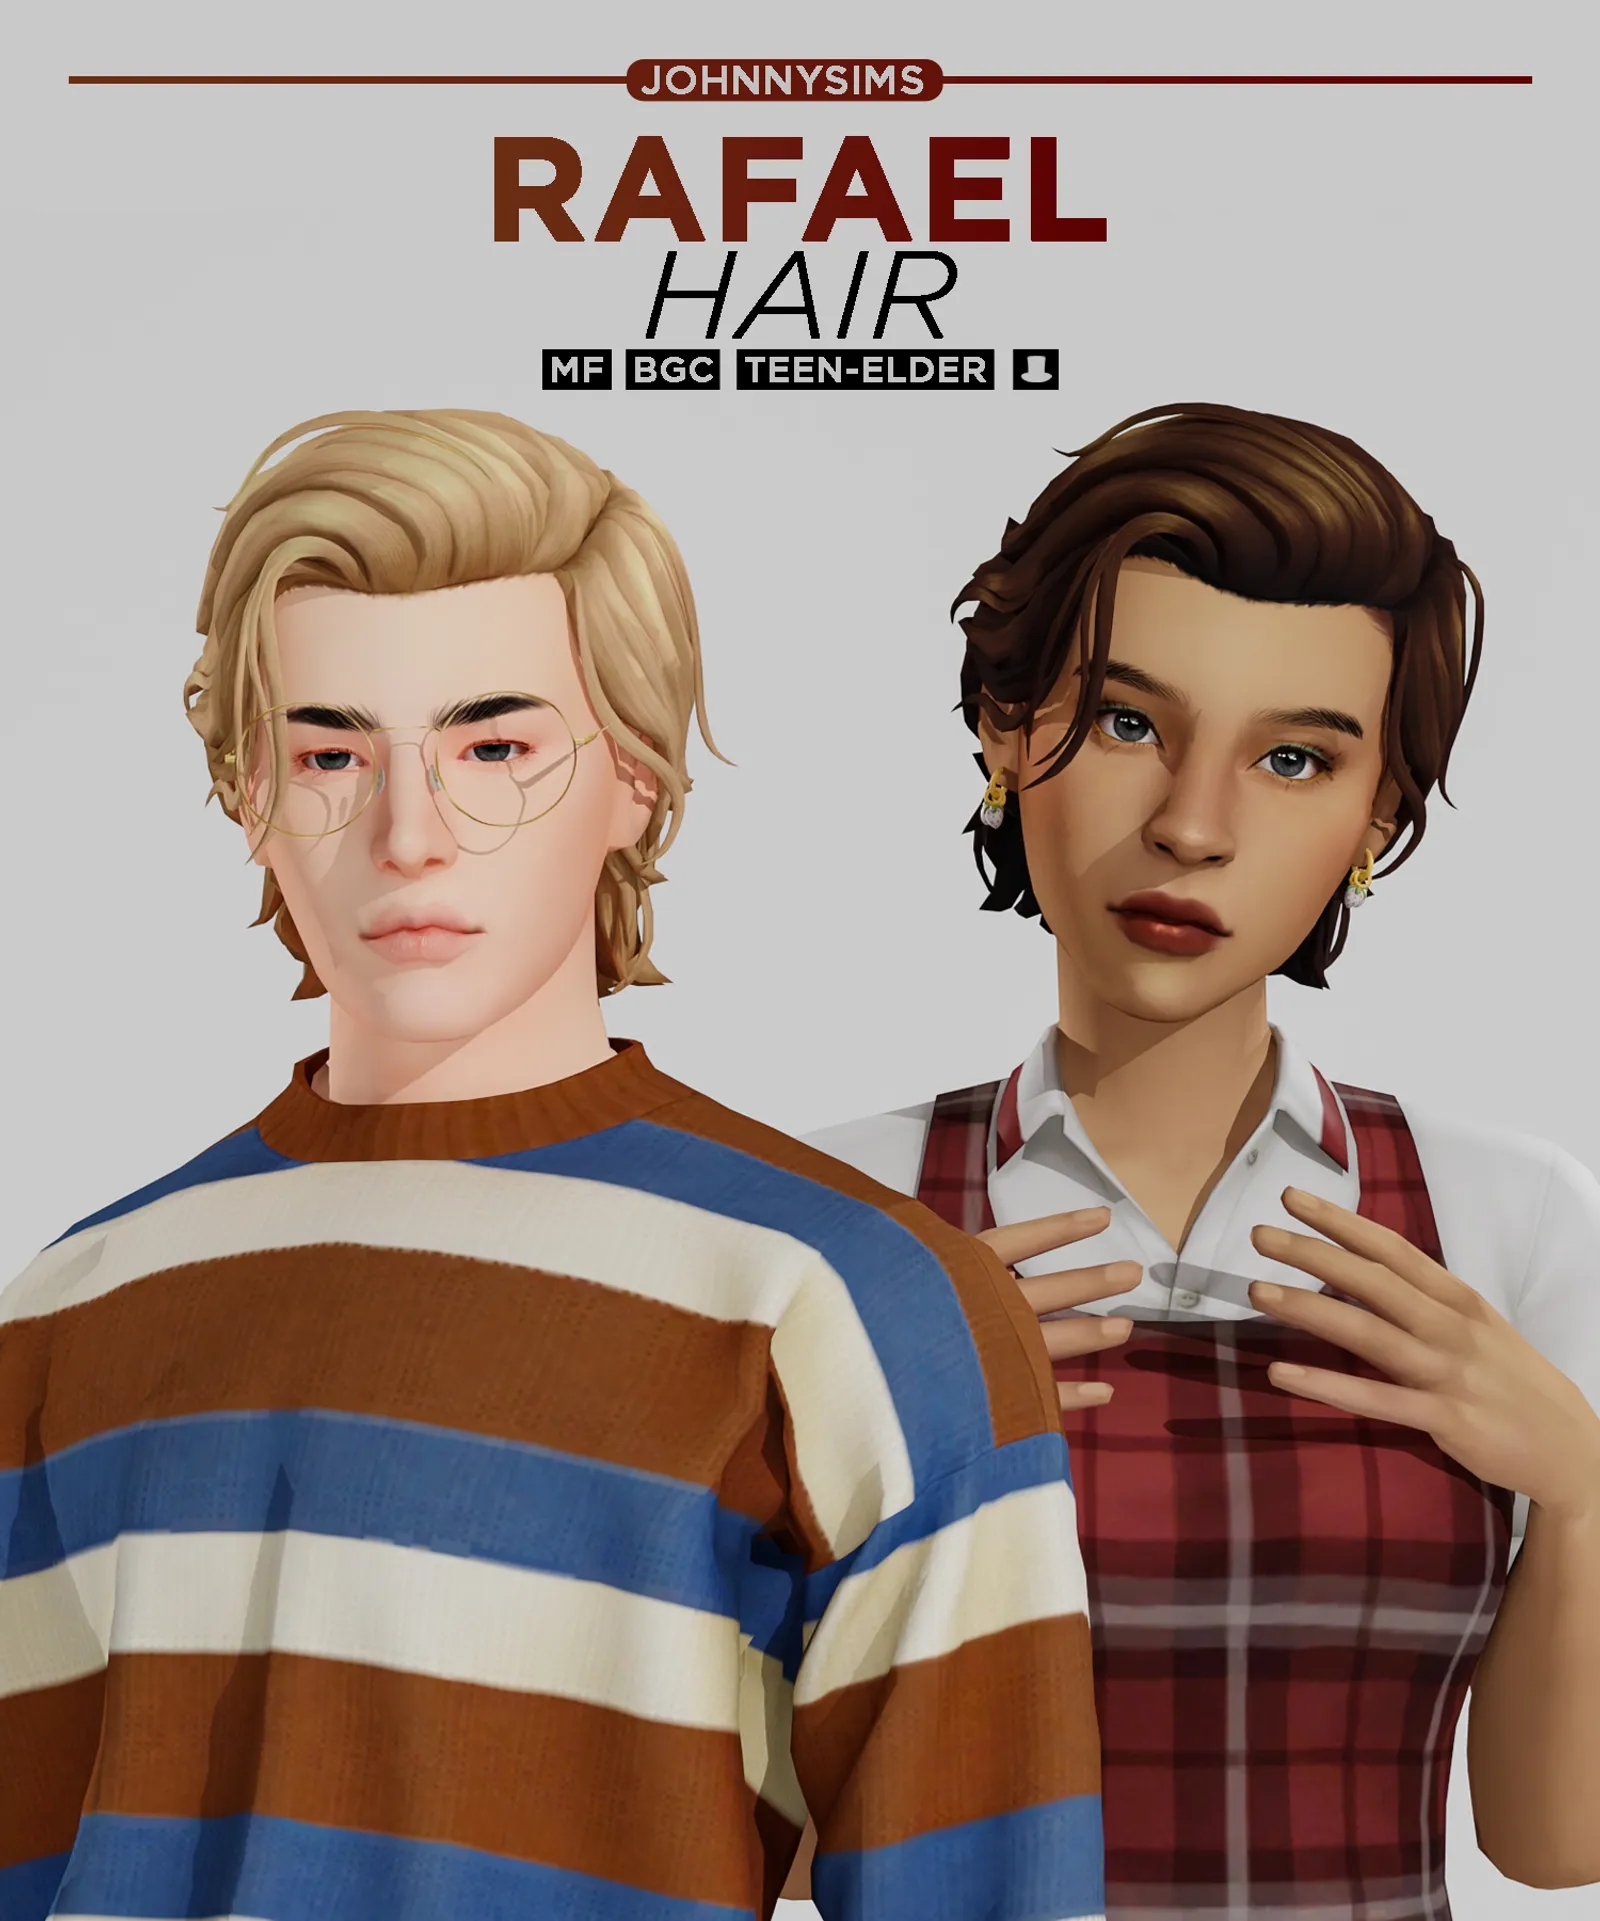 Rafael Hair